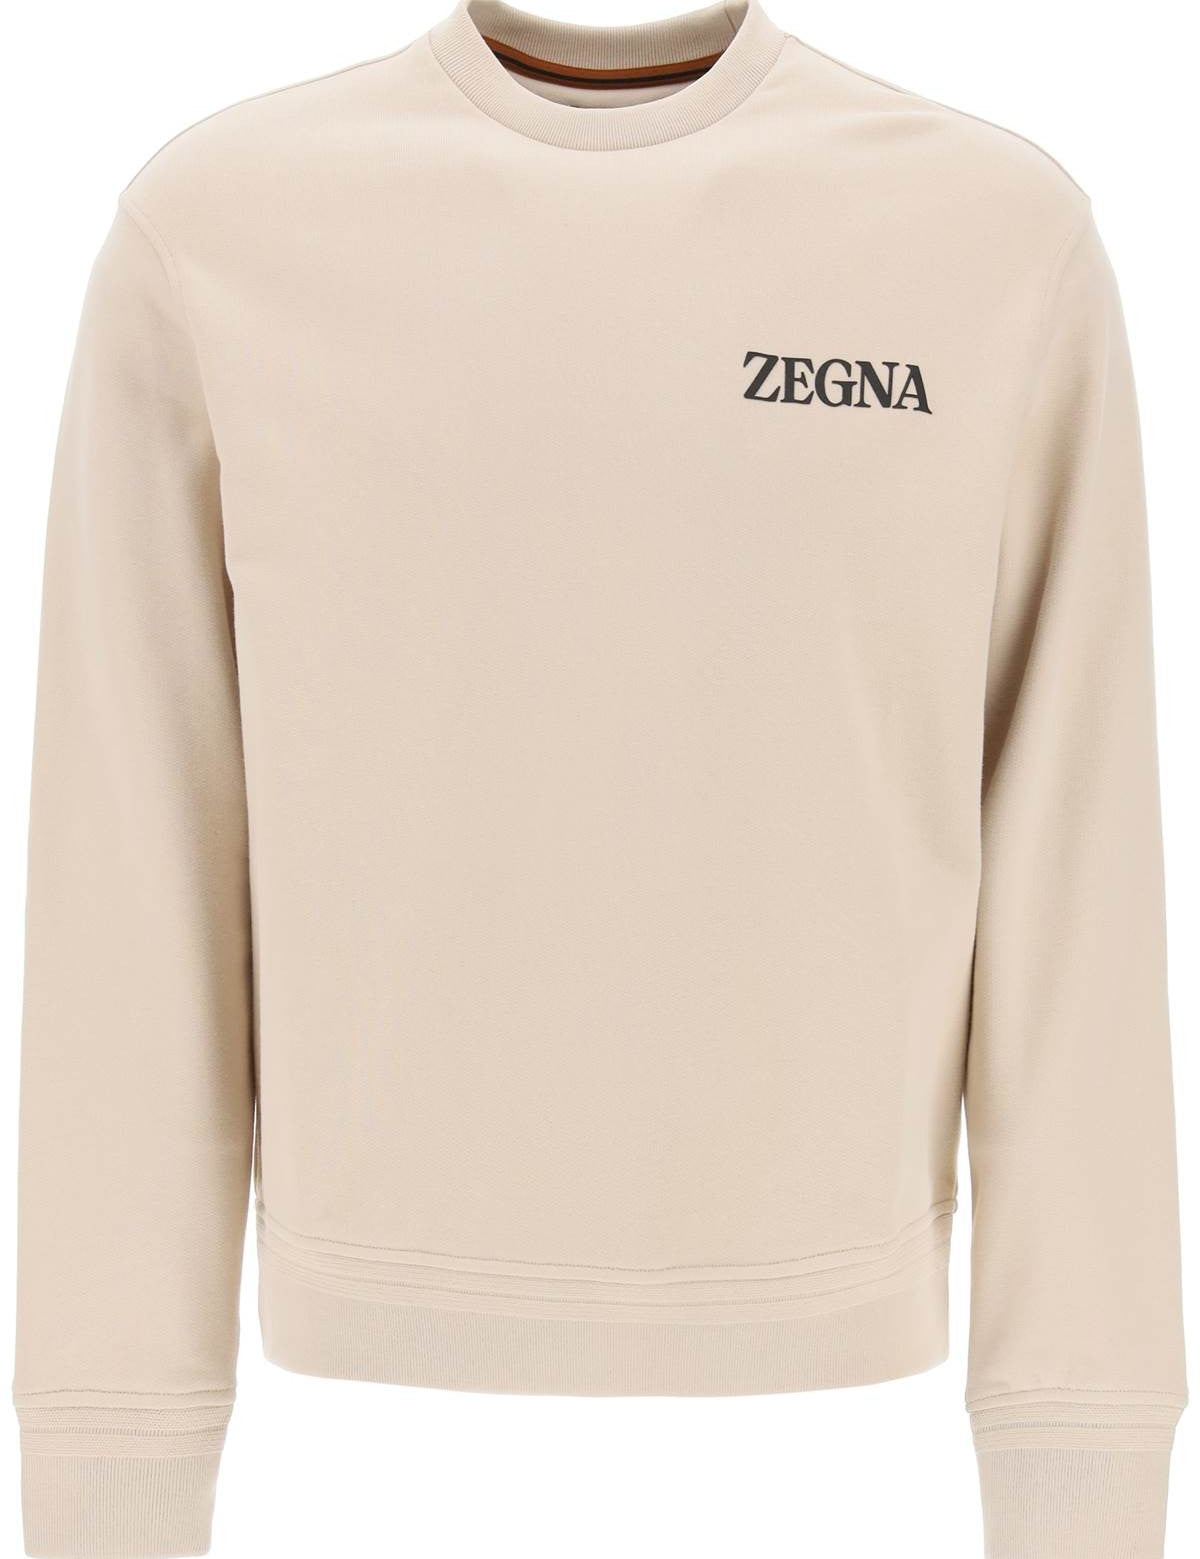 zegna-crewneck-sweatshirt-with-rubberized-logo.jpg